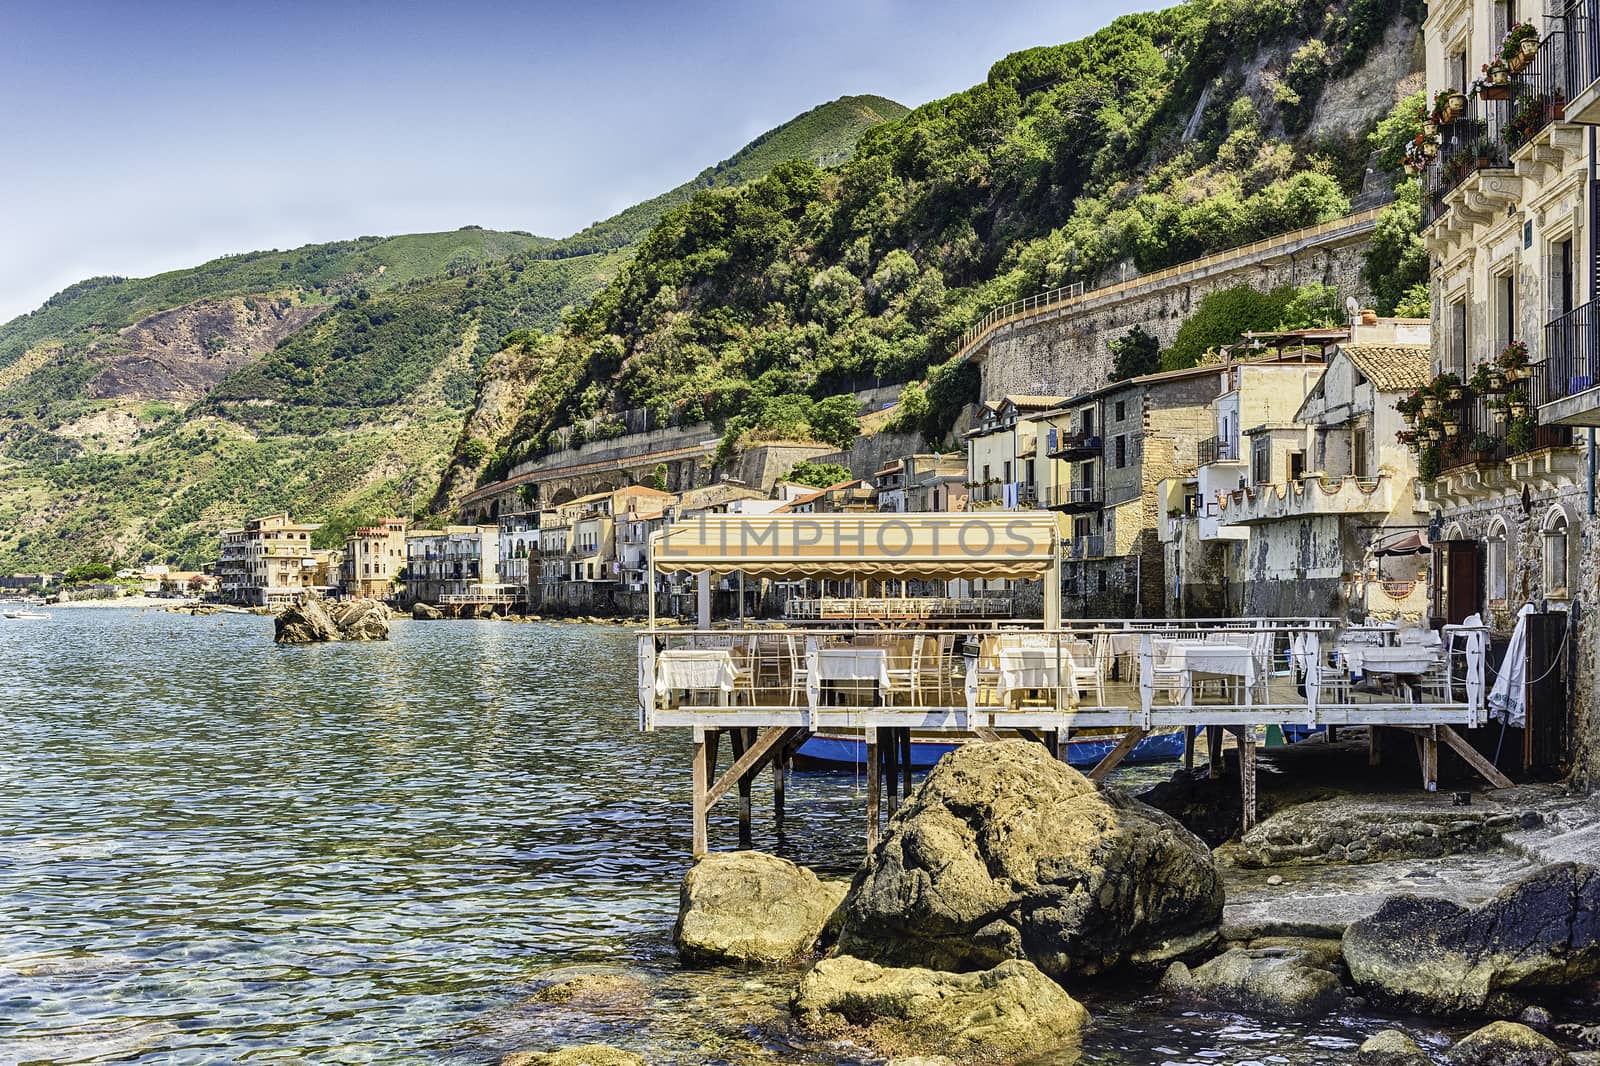 Beautiful seascape in the village of Scilla, Calabria, Italy by marcorubino